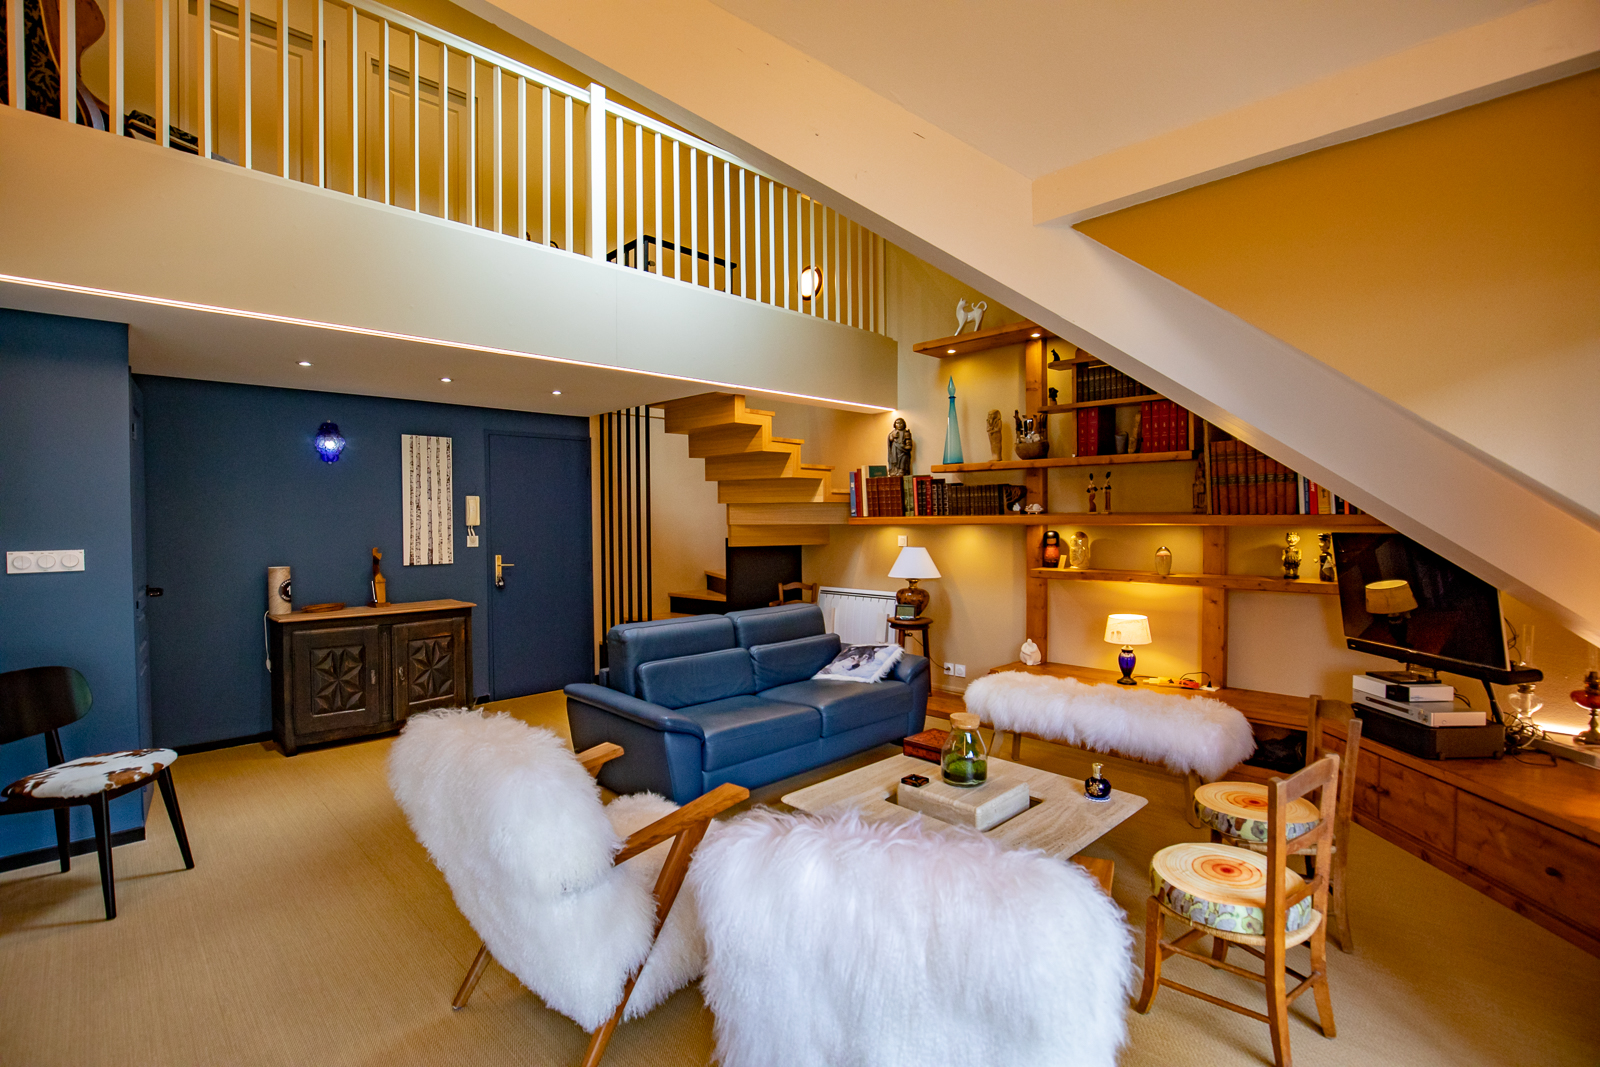 Un salon cosy et moderne dans un agencement total d'appartements avec un canapé bleu moelleux, des fauteuils blancs moelleux et une ambiance lumineuse chaleureuse, complétée par une mezzanine avec